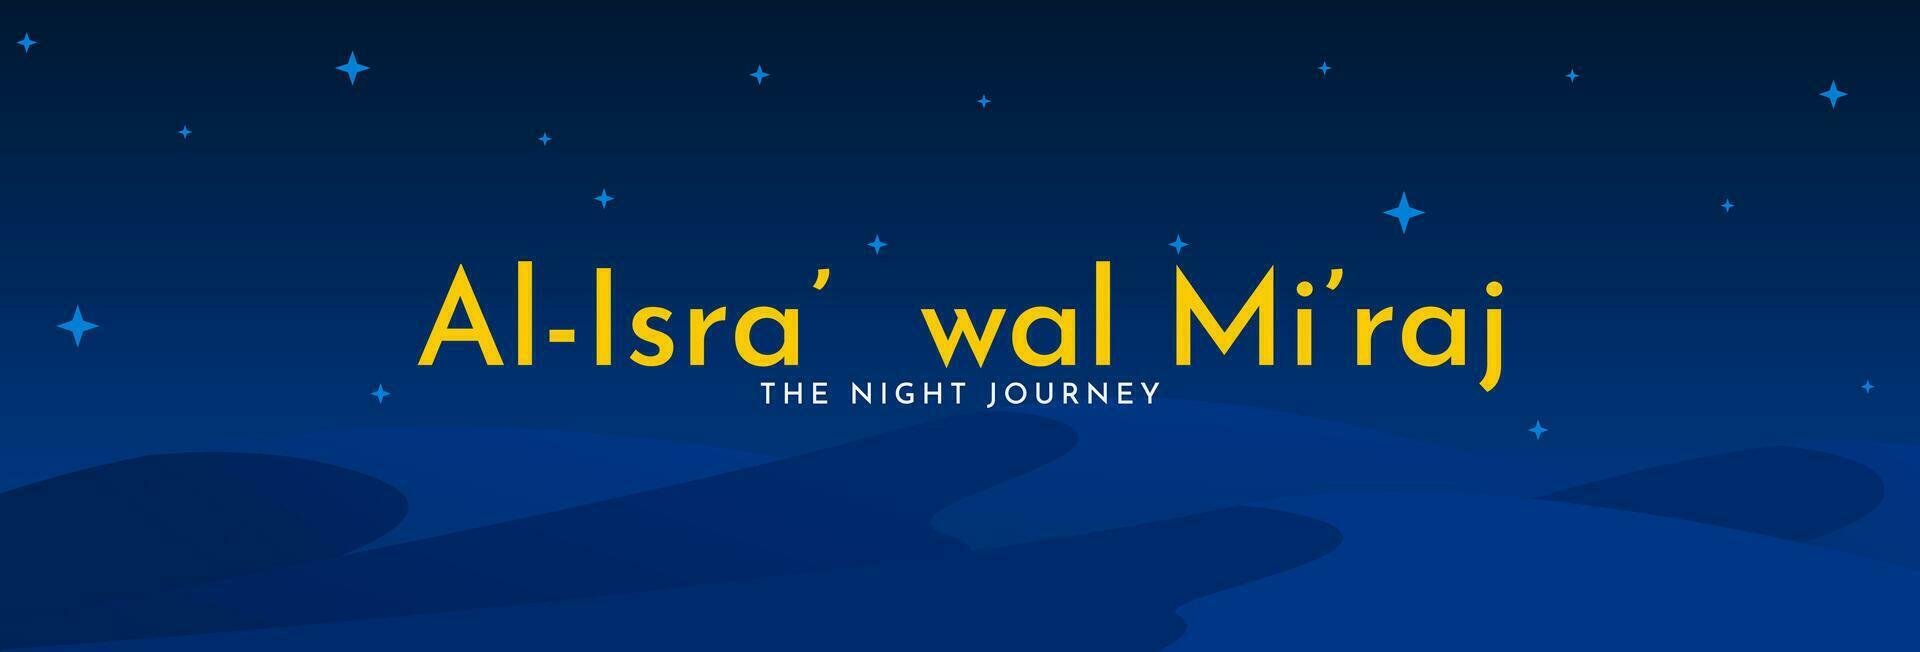 al-isra' wal mi'raj, le nuit périple de le prophète Mohammed scie. islamique Contexte conception modèle. vecteur illustration